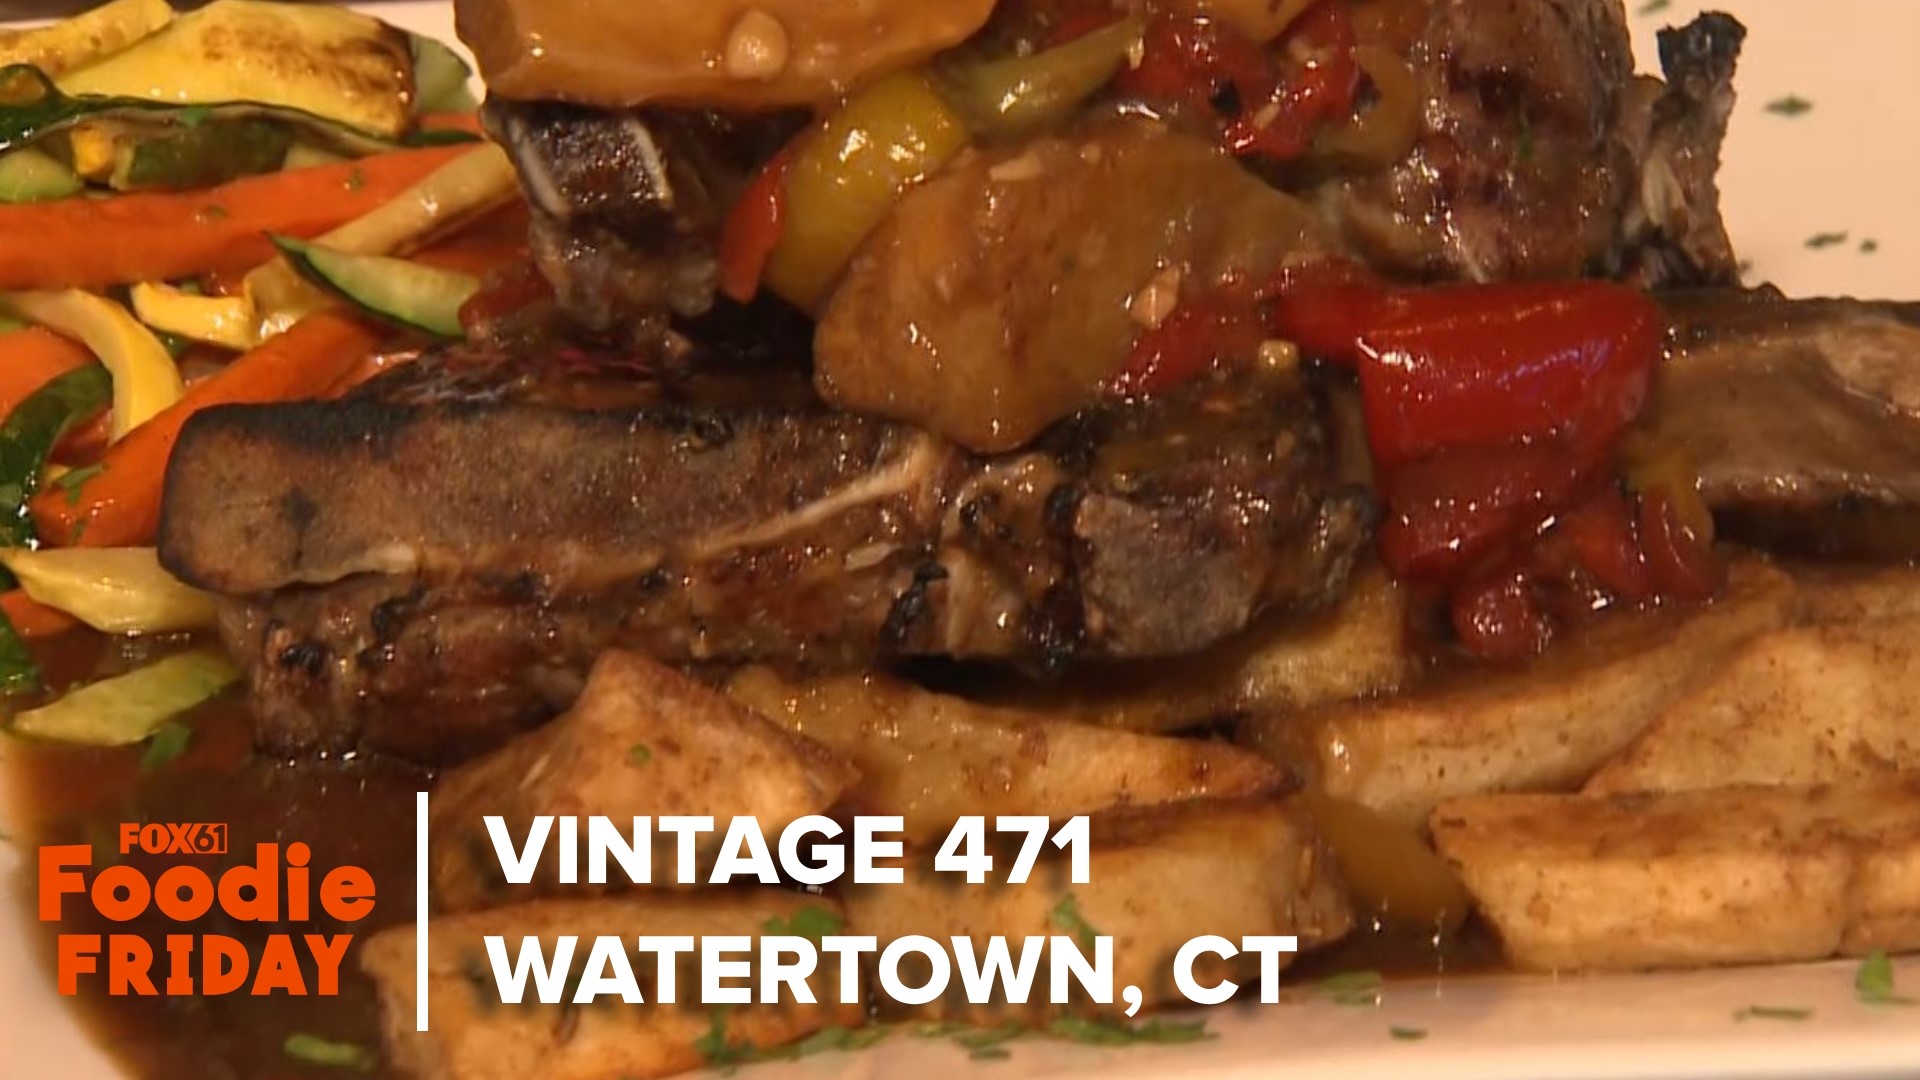 Rachel Piscitelli visits Vintage 471 in Watertown for Foodie Friday.